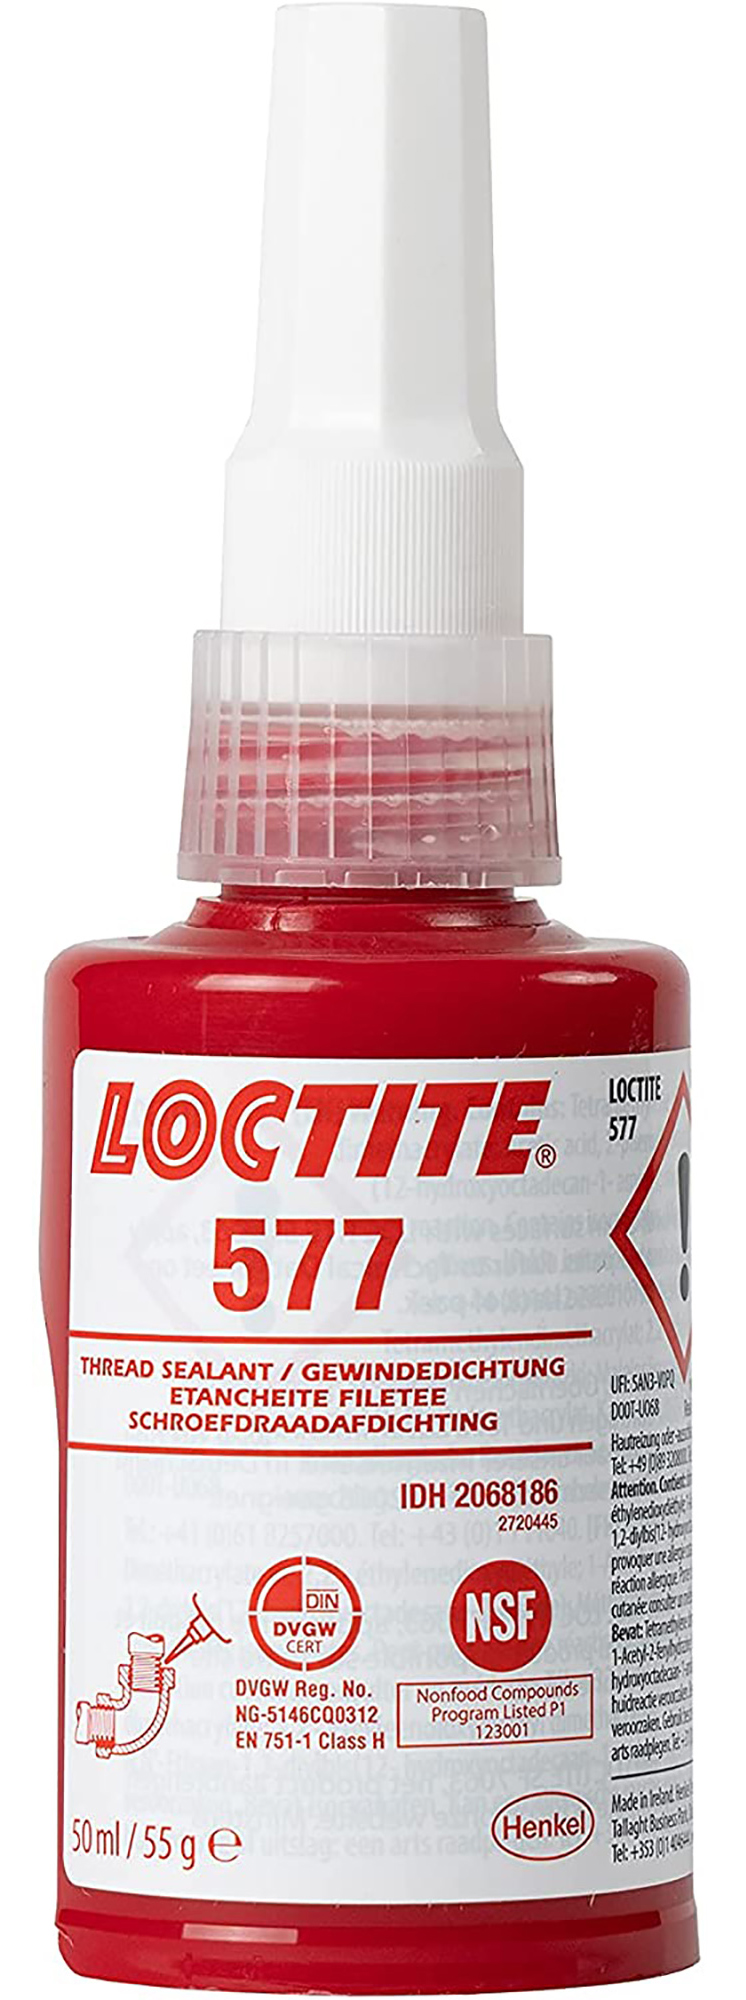 Loctite 577 Gängtätning 50 ml  873-5771